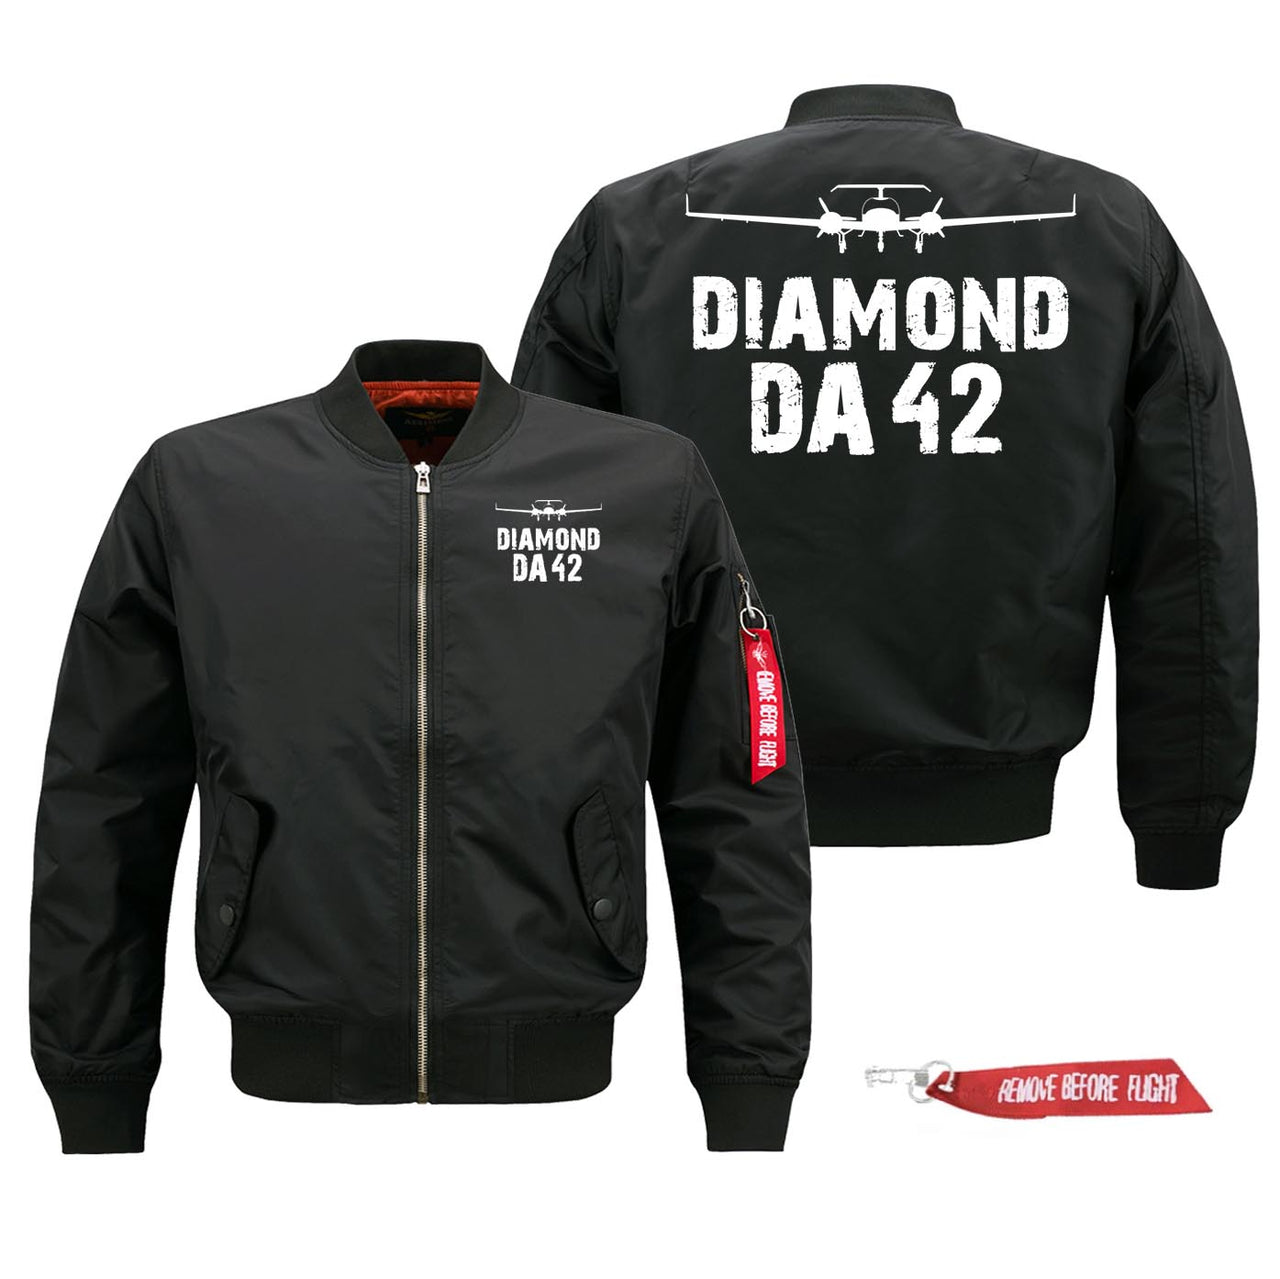 Diamond DA42 Silhouette & Designed Pilot Jackets (Customizable)